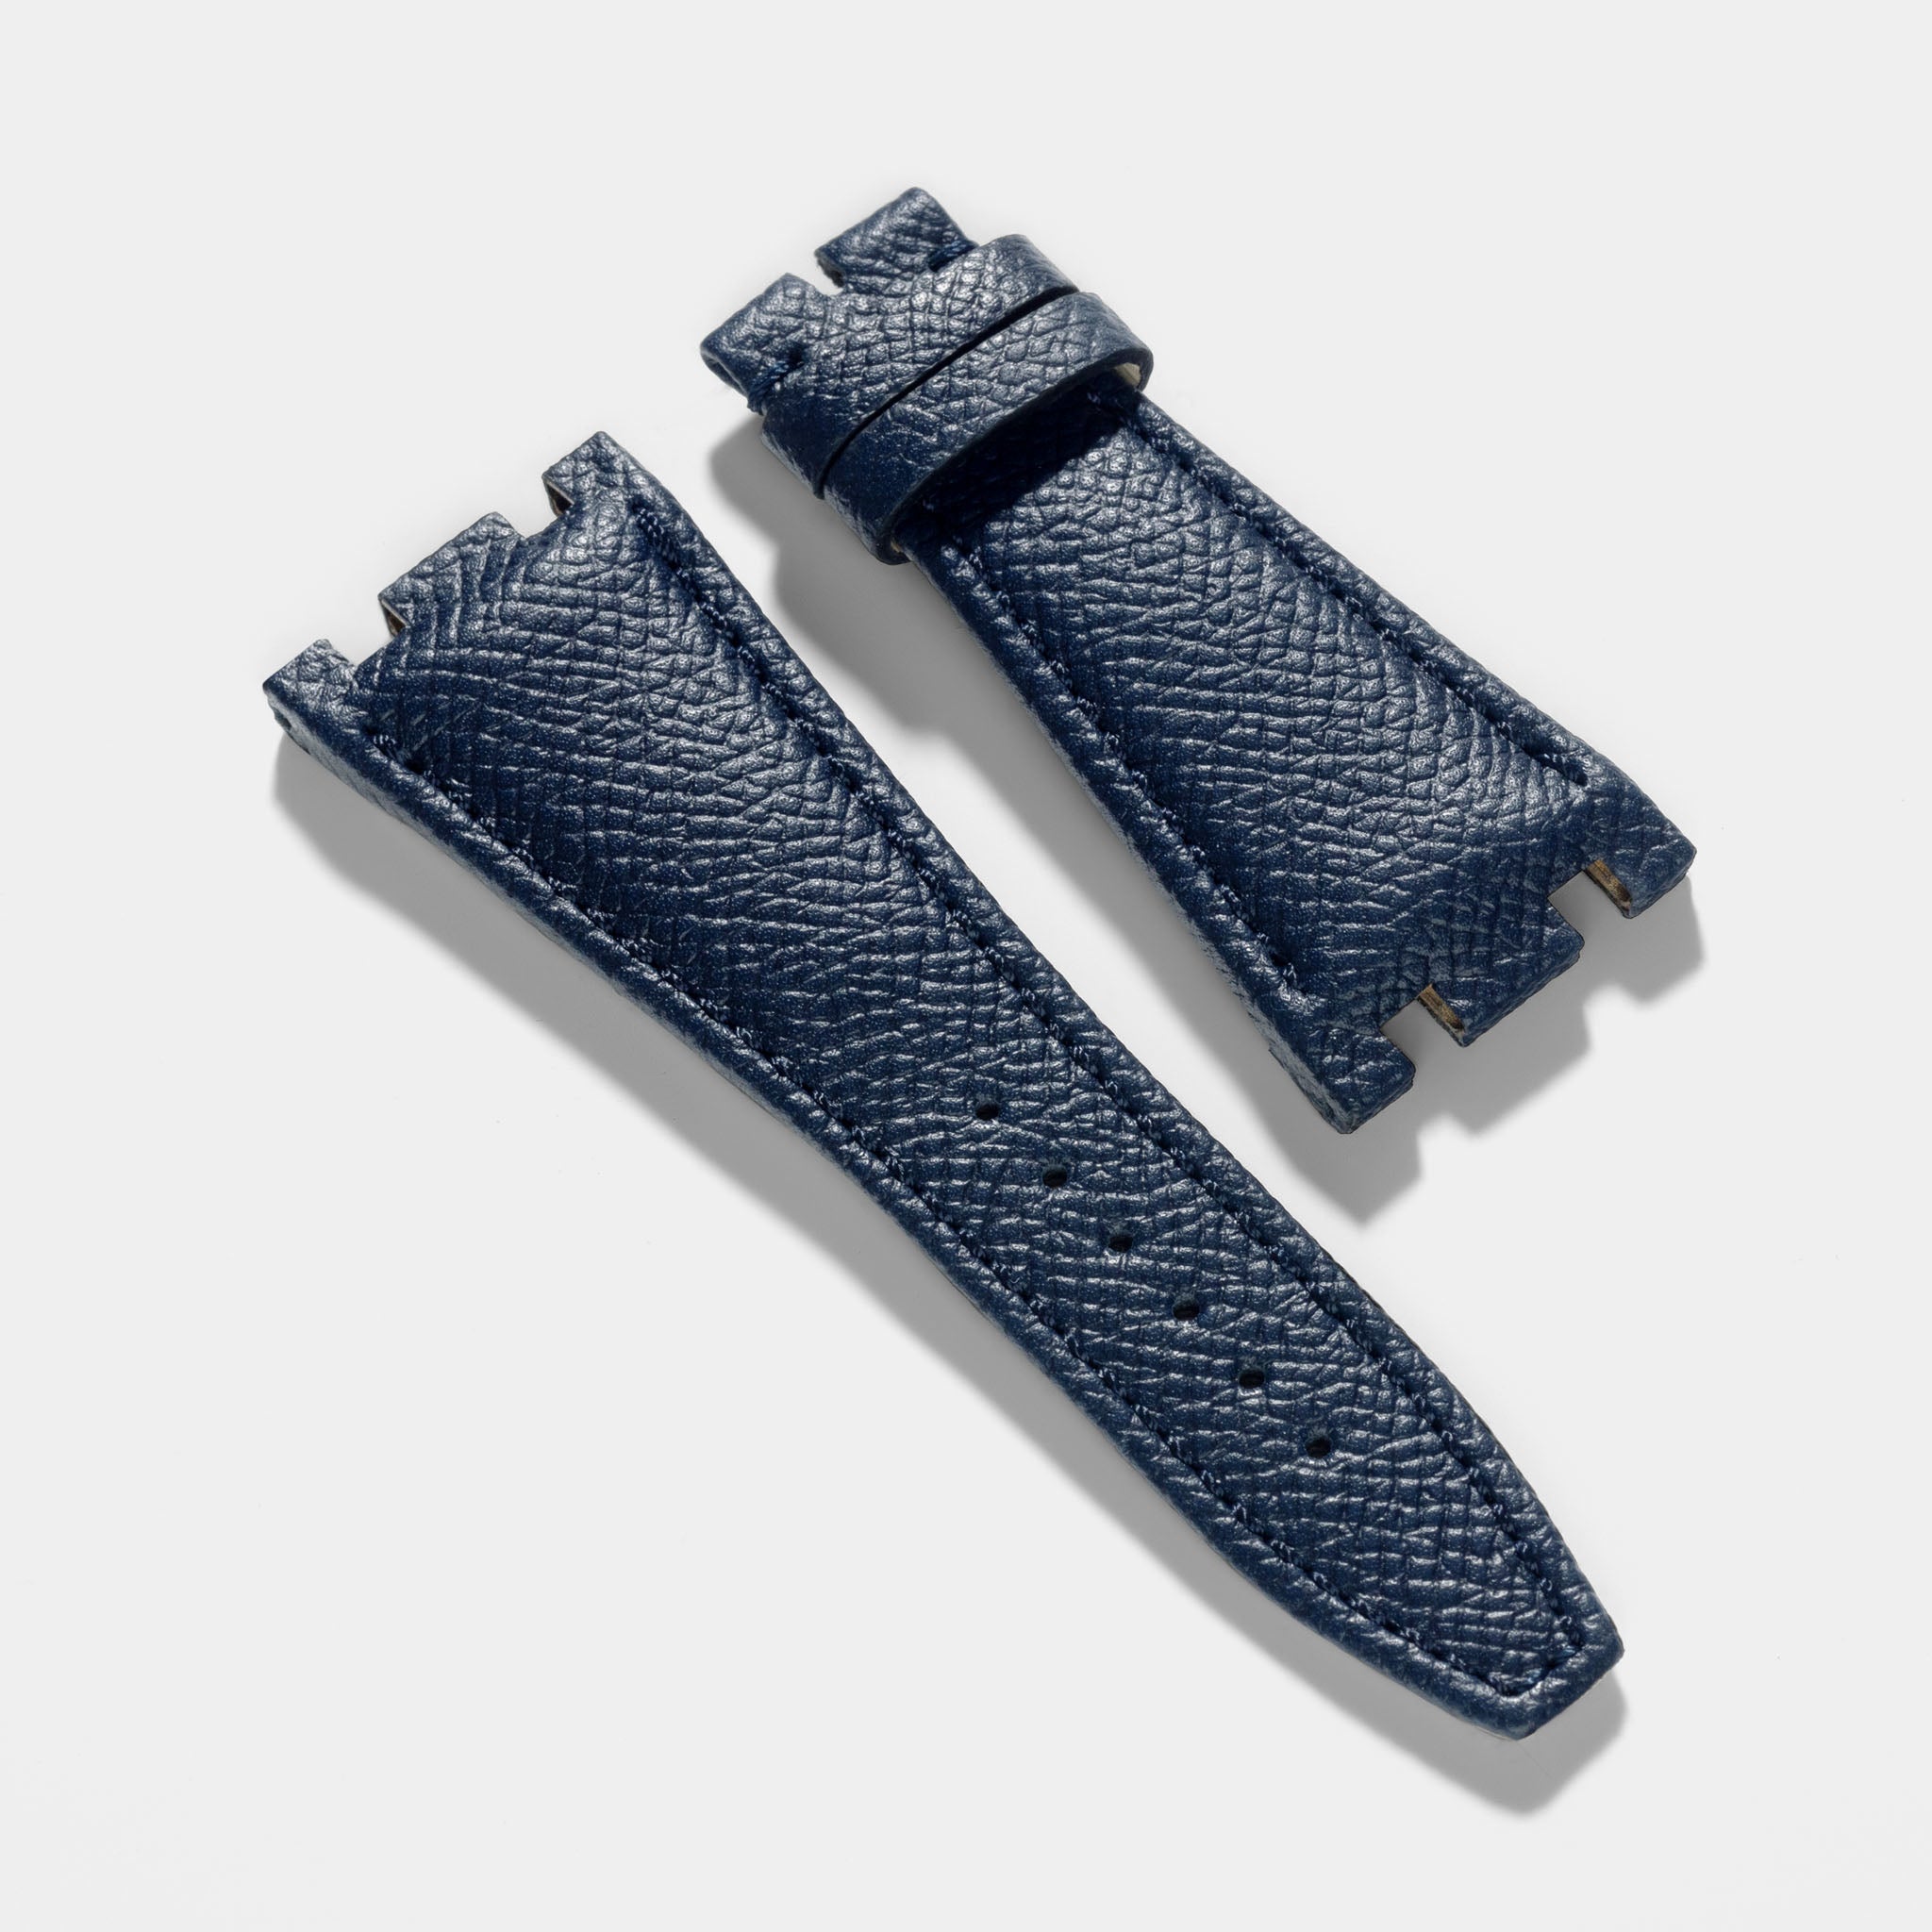 Finest_Blue_leather_Watch_Strap_For_Audemars_piguet_royal_oak_offshore_43mm